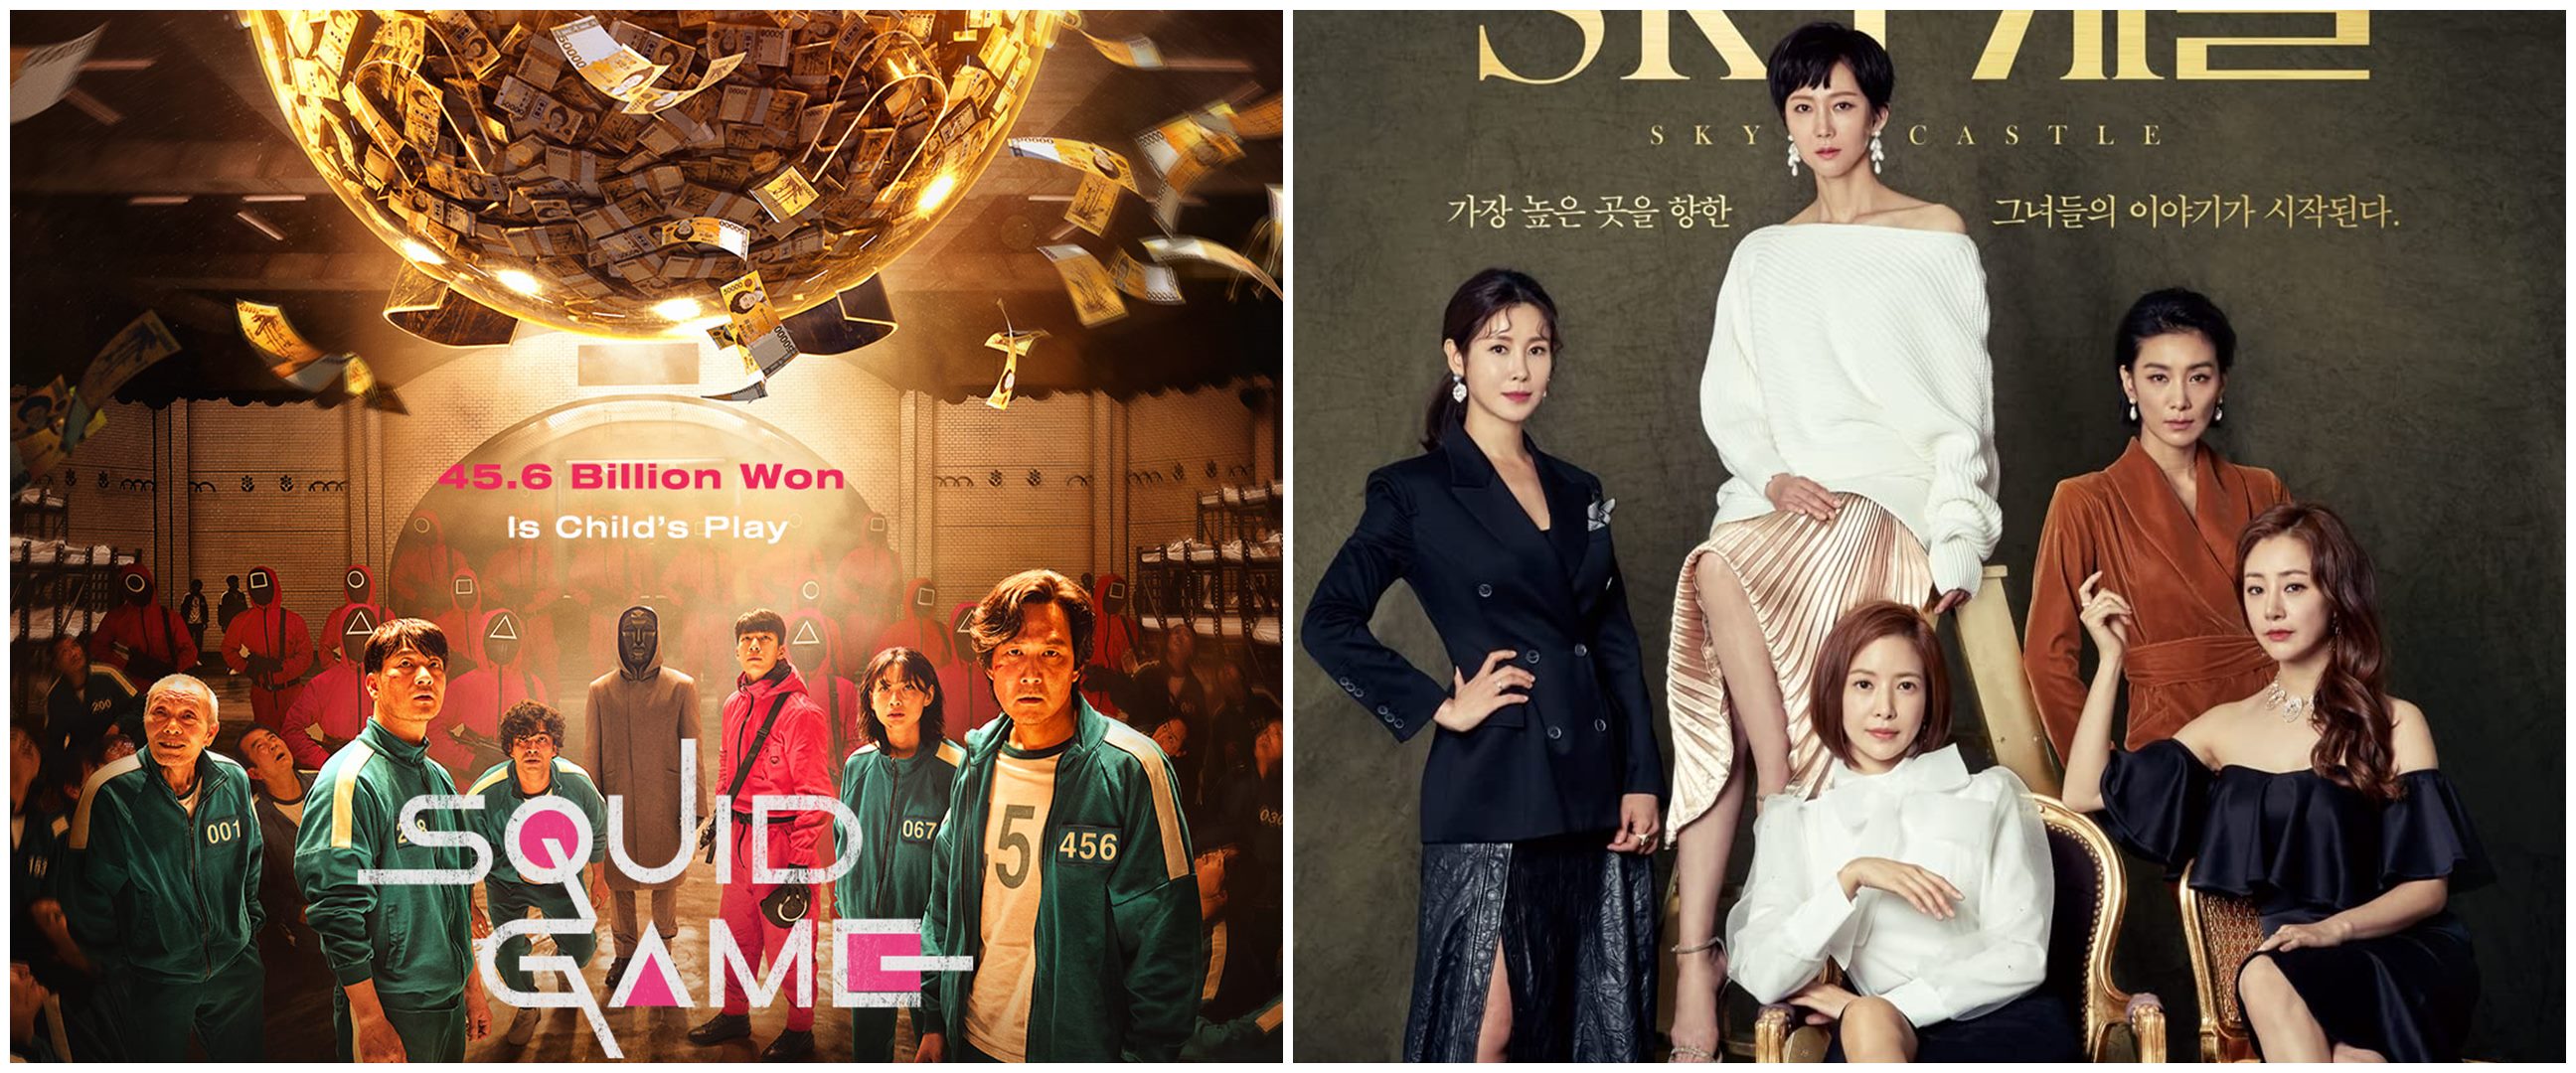 11 Drama Korea populer sepanjang masa, Squid Game berhasil mendunia